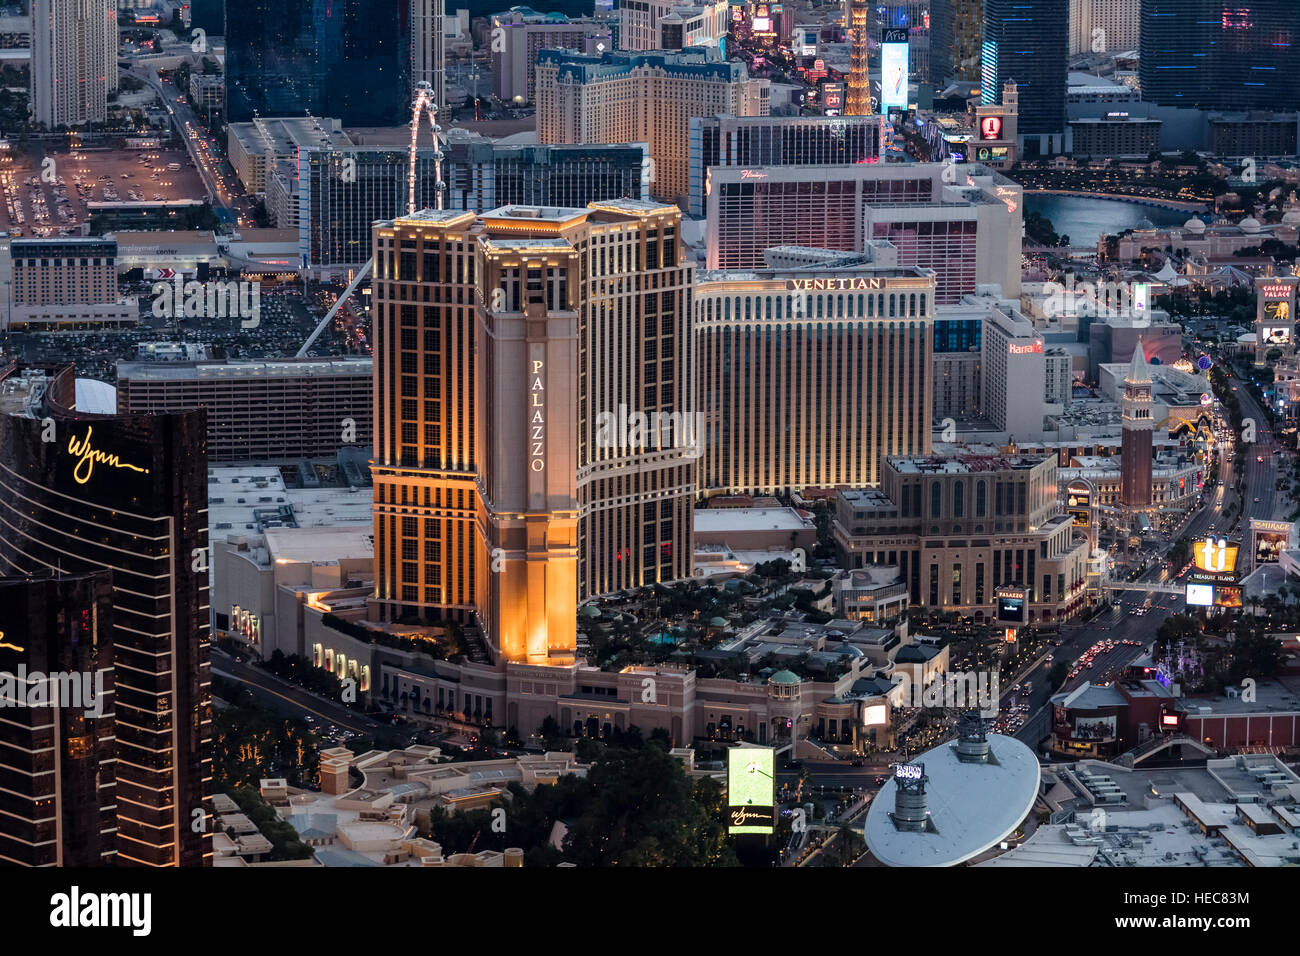 Vista aerea del Venetian Hotel sullo Strip di Las Vegas, Nevada, STATI UNITI D'AMERICA Foto Stock